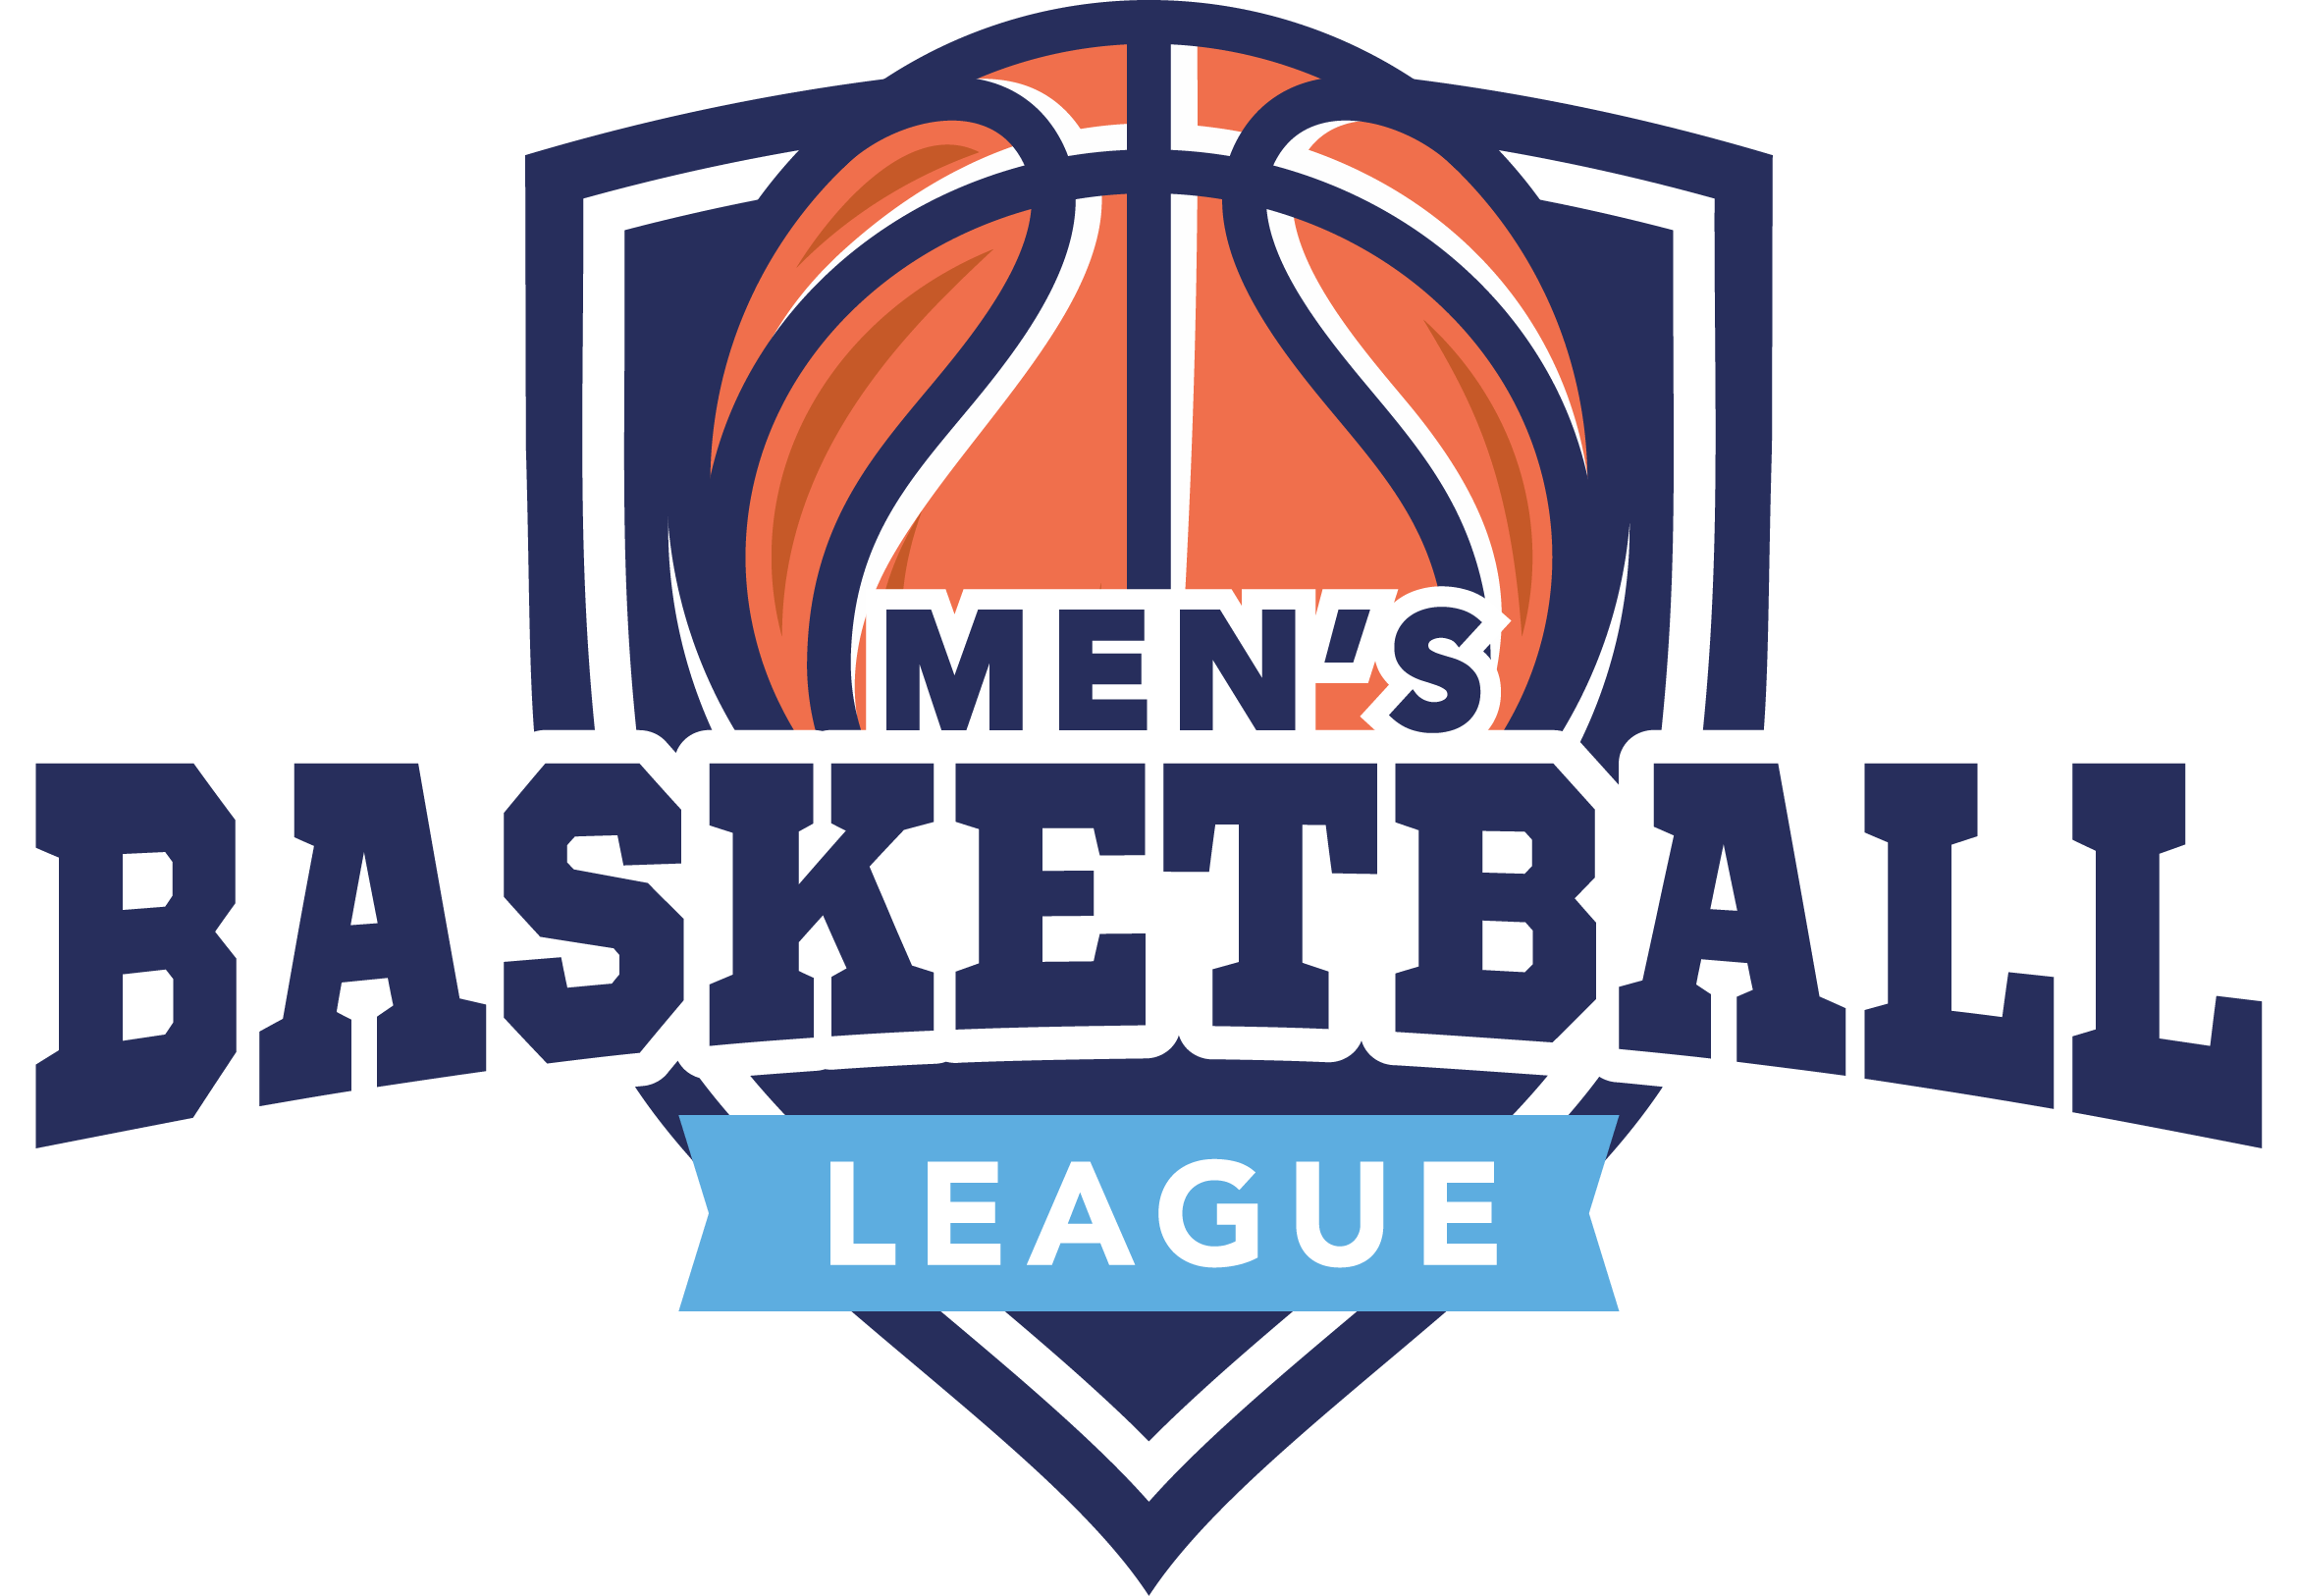 Basketball League Logo - Men's Basketball League. Family Life Center